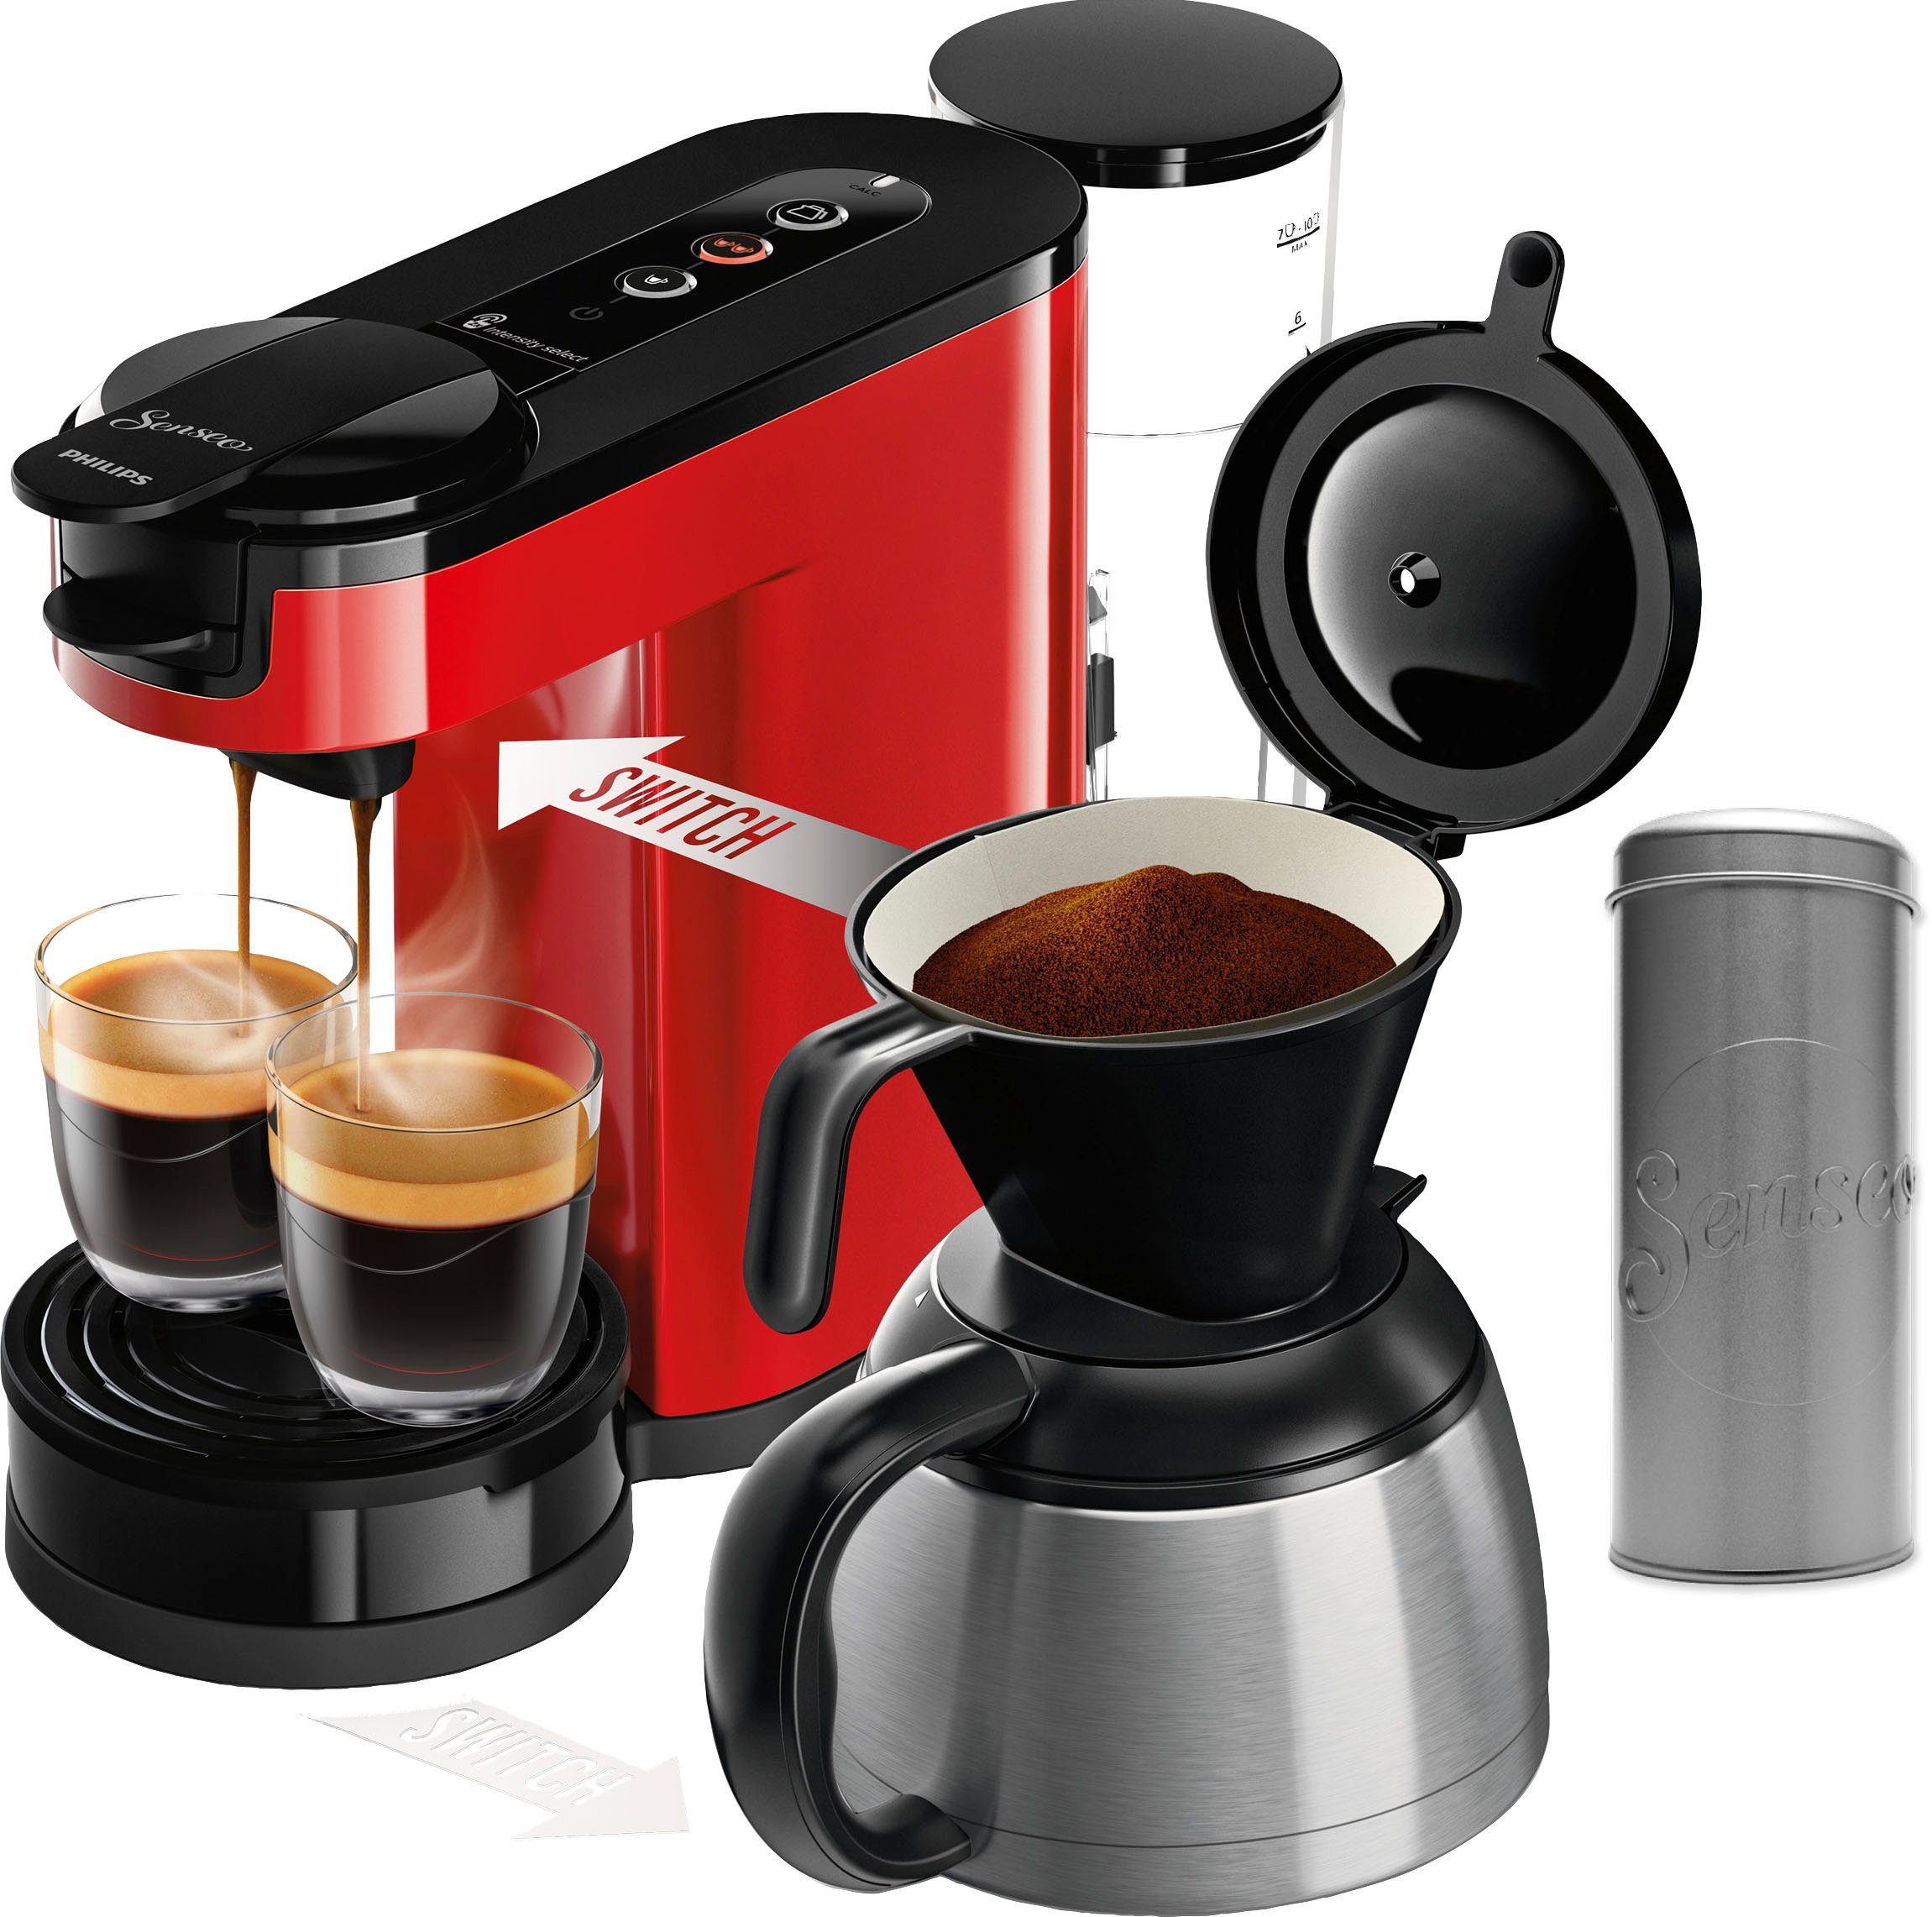 Kaffeepadmaschine Switch HD6592/84, 1l Kaffeekanne, inkl. Kaffeepaddose im  Wert von 9,90 € UVP